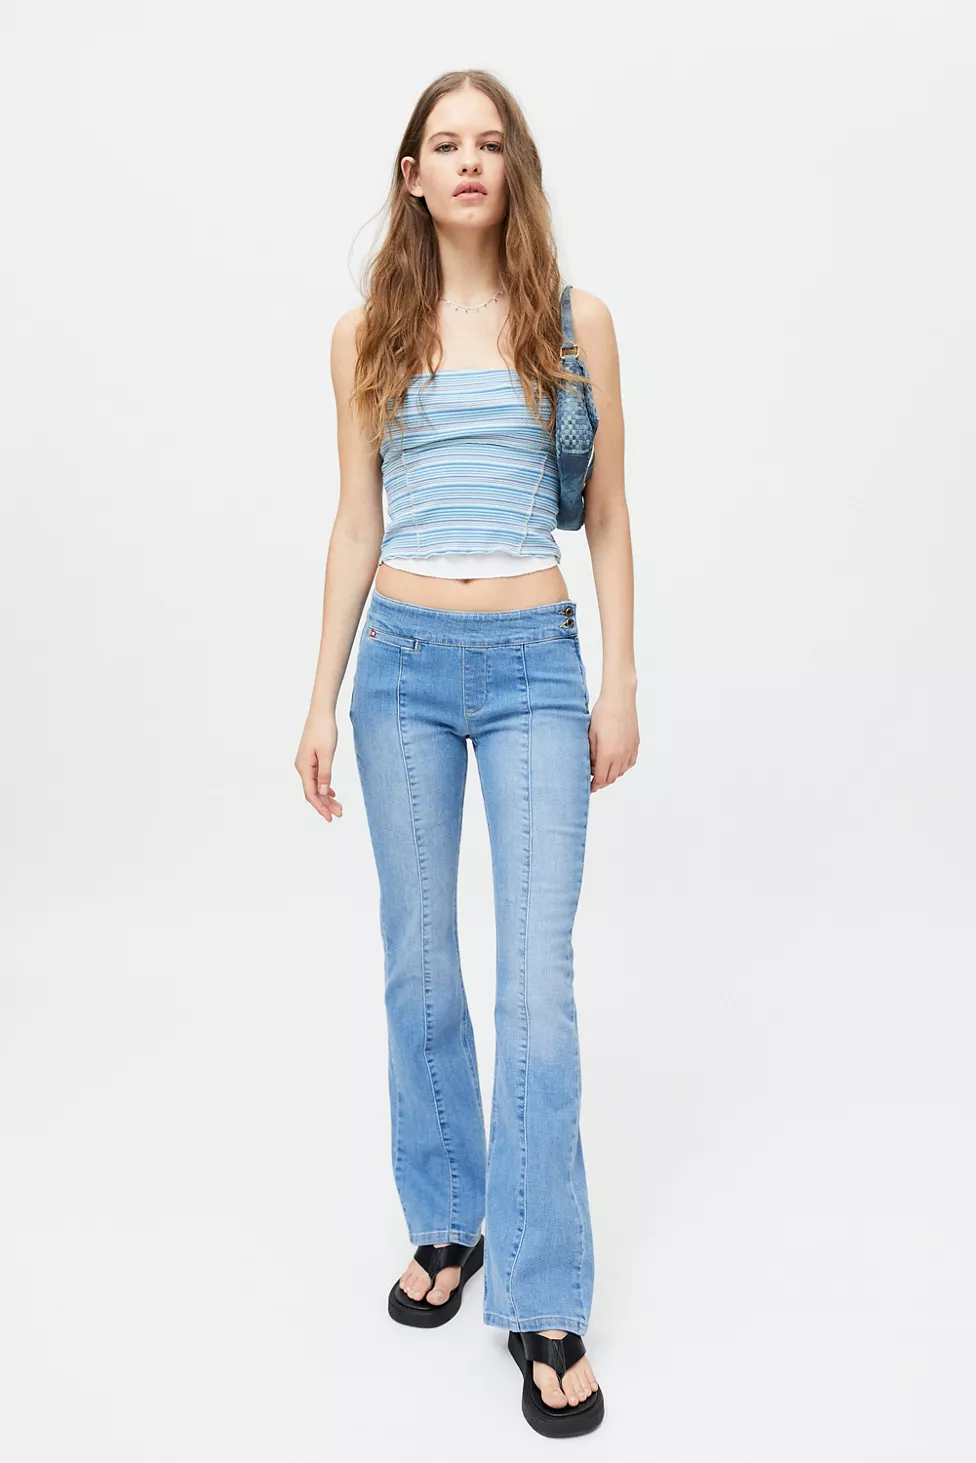 Nice Jeans Ass Miss Sixty – Telegraph